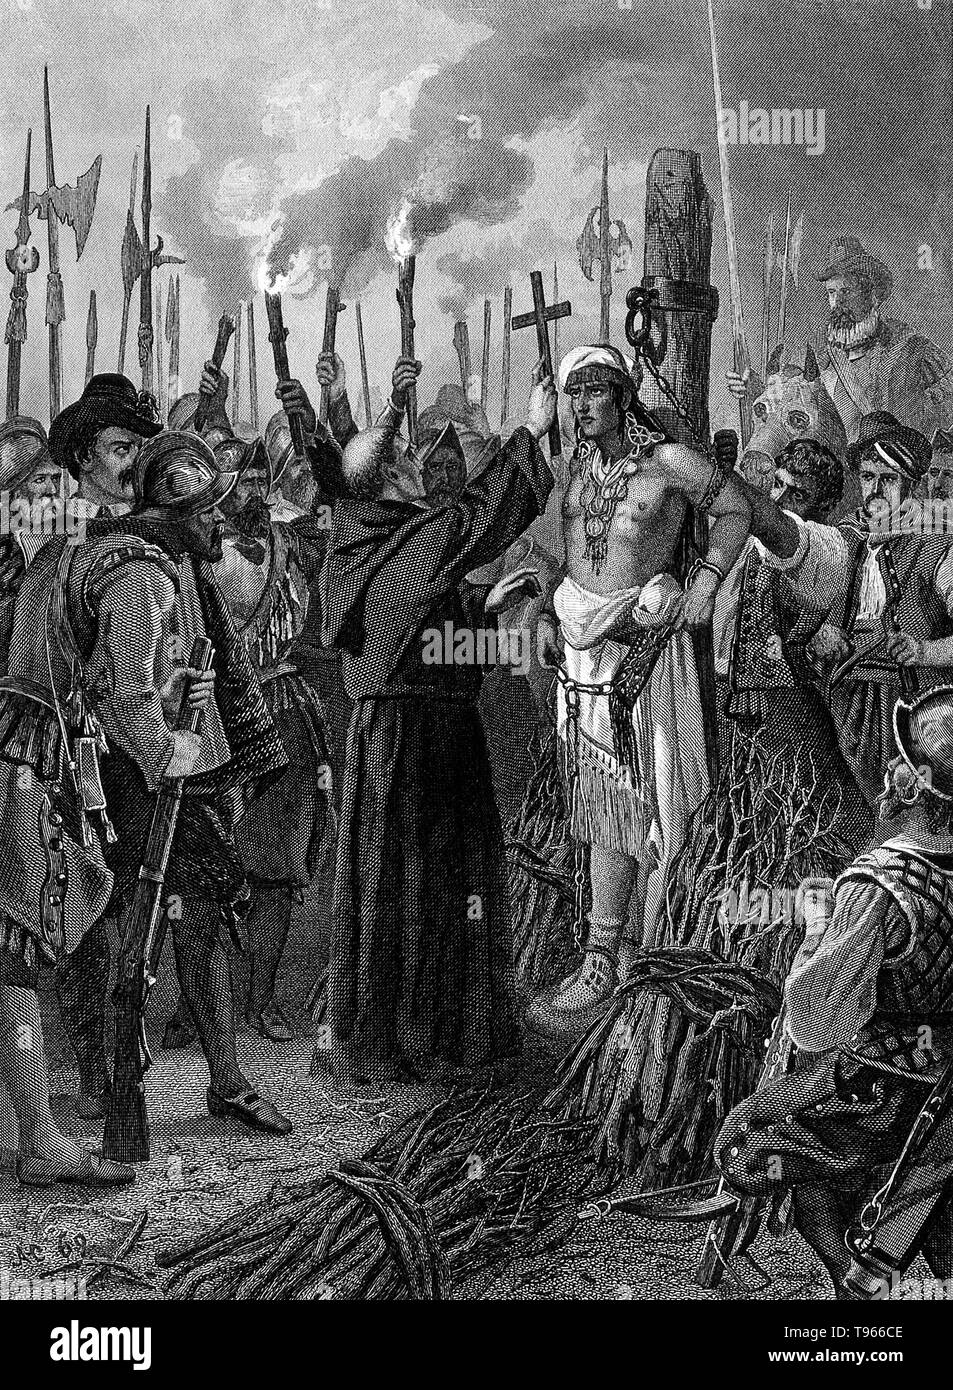 Kupferstich mit der Darstellung der Ausführung von Atahualpa Atahualpa (1497-1533) war der letzte souveräne Herrscher des Inkareiches, vor der Spanischen Eroberung Perus. Während der Spanischen Eroberung des Inkareiches, der Spanier Francisco Pizarro gefangen Atahualpa und verwendet ihn der Inca Empire zu steuern. Das zahlenmäßig Spanisch sah Atahualpa als zu viel einer Haftung und beschlossen, ihn auszuführen. Stockfoto